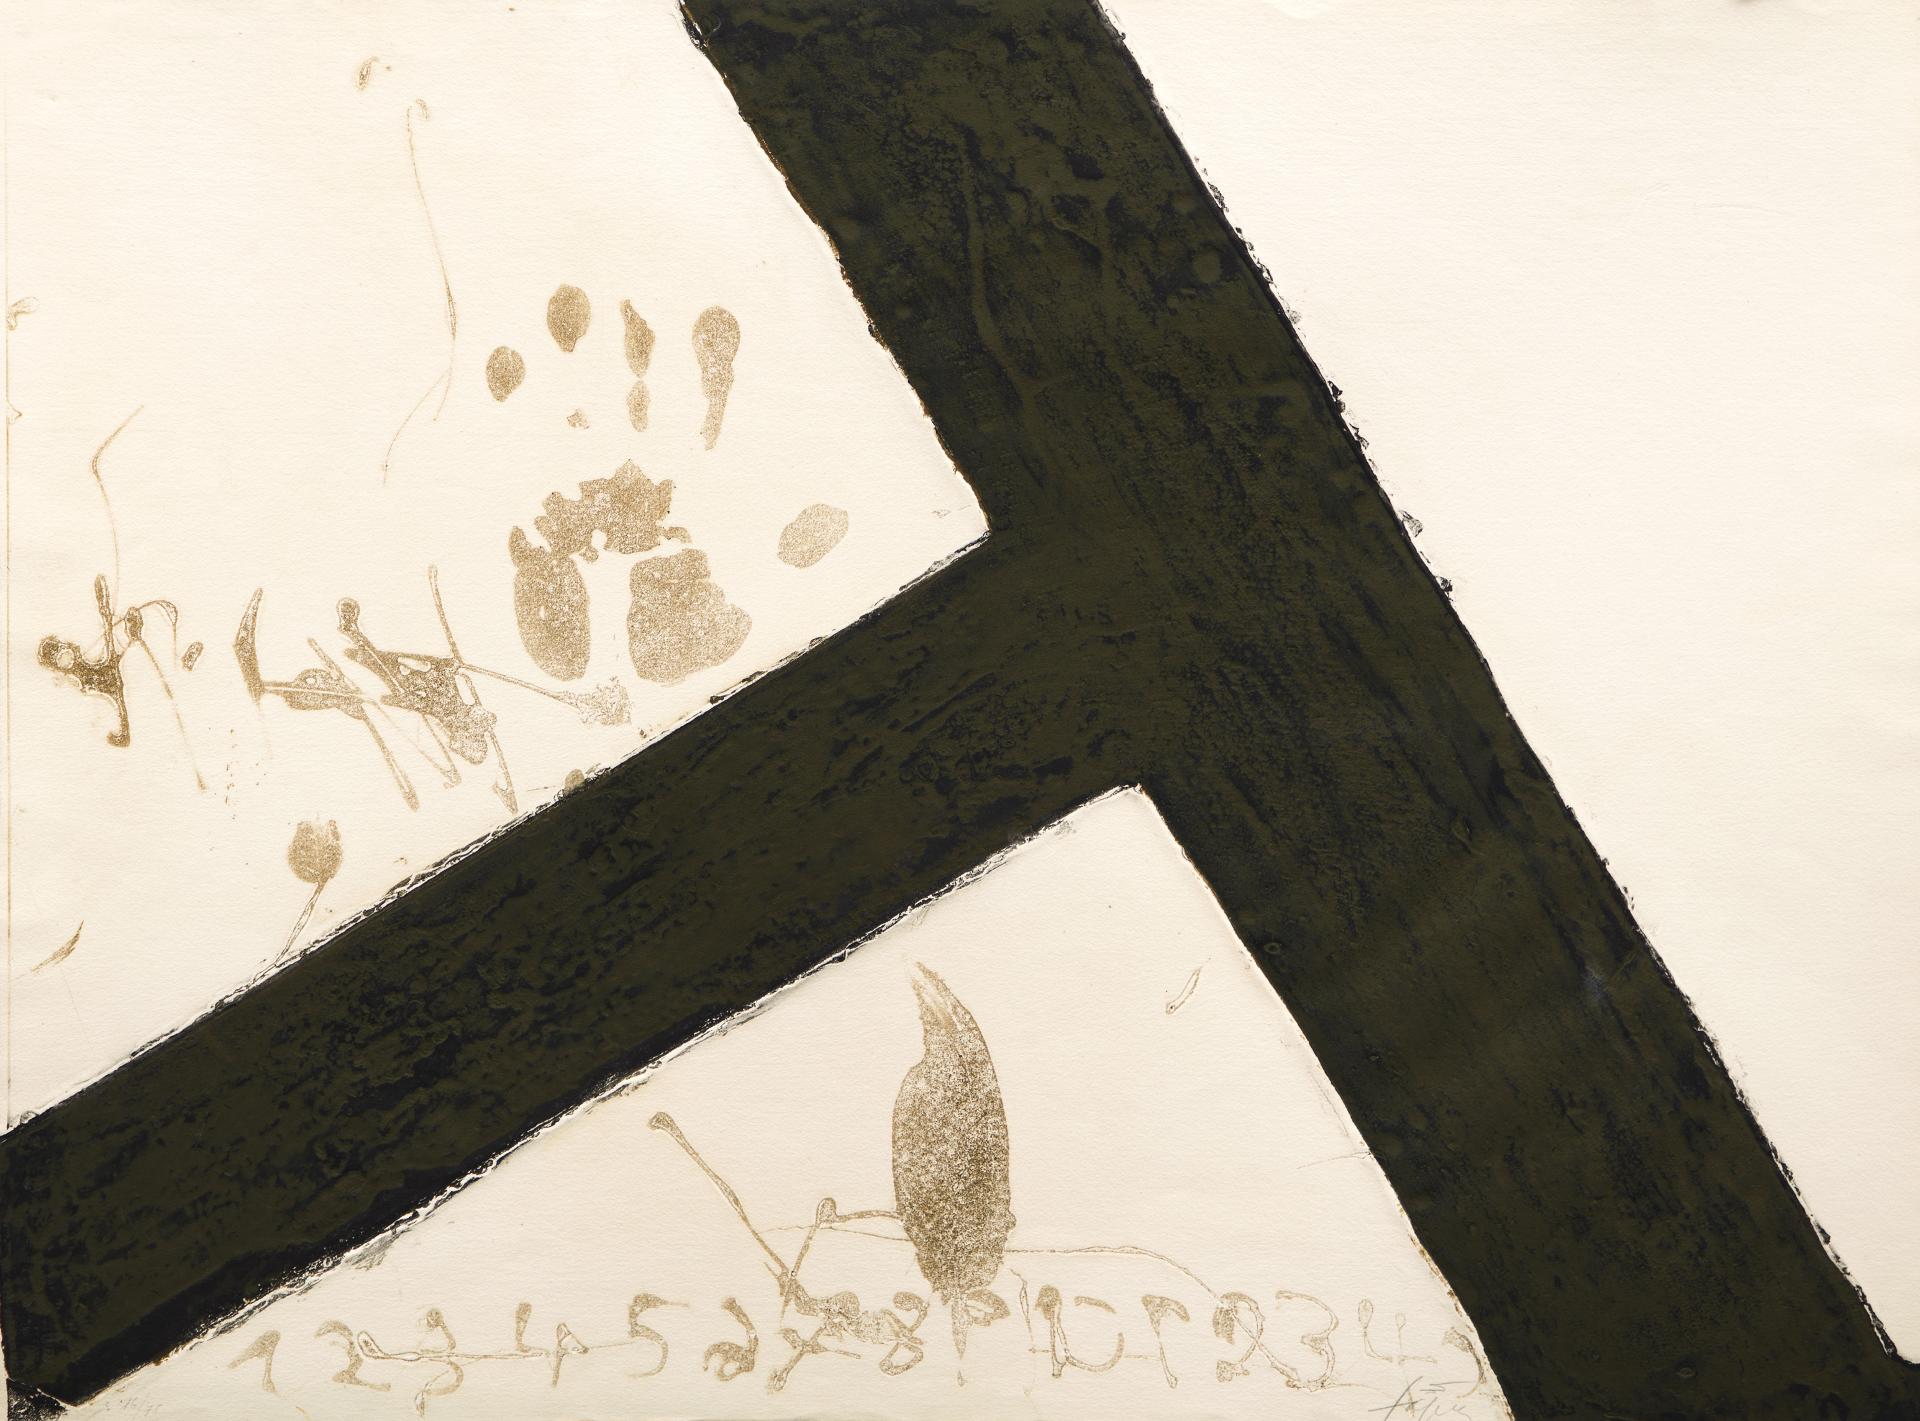 Antoni Tàpies (1923-2012) - T inclinada, 1972